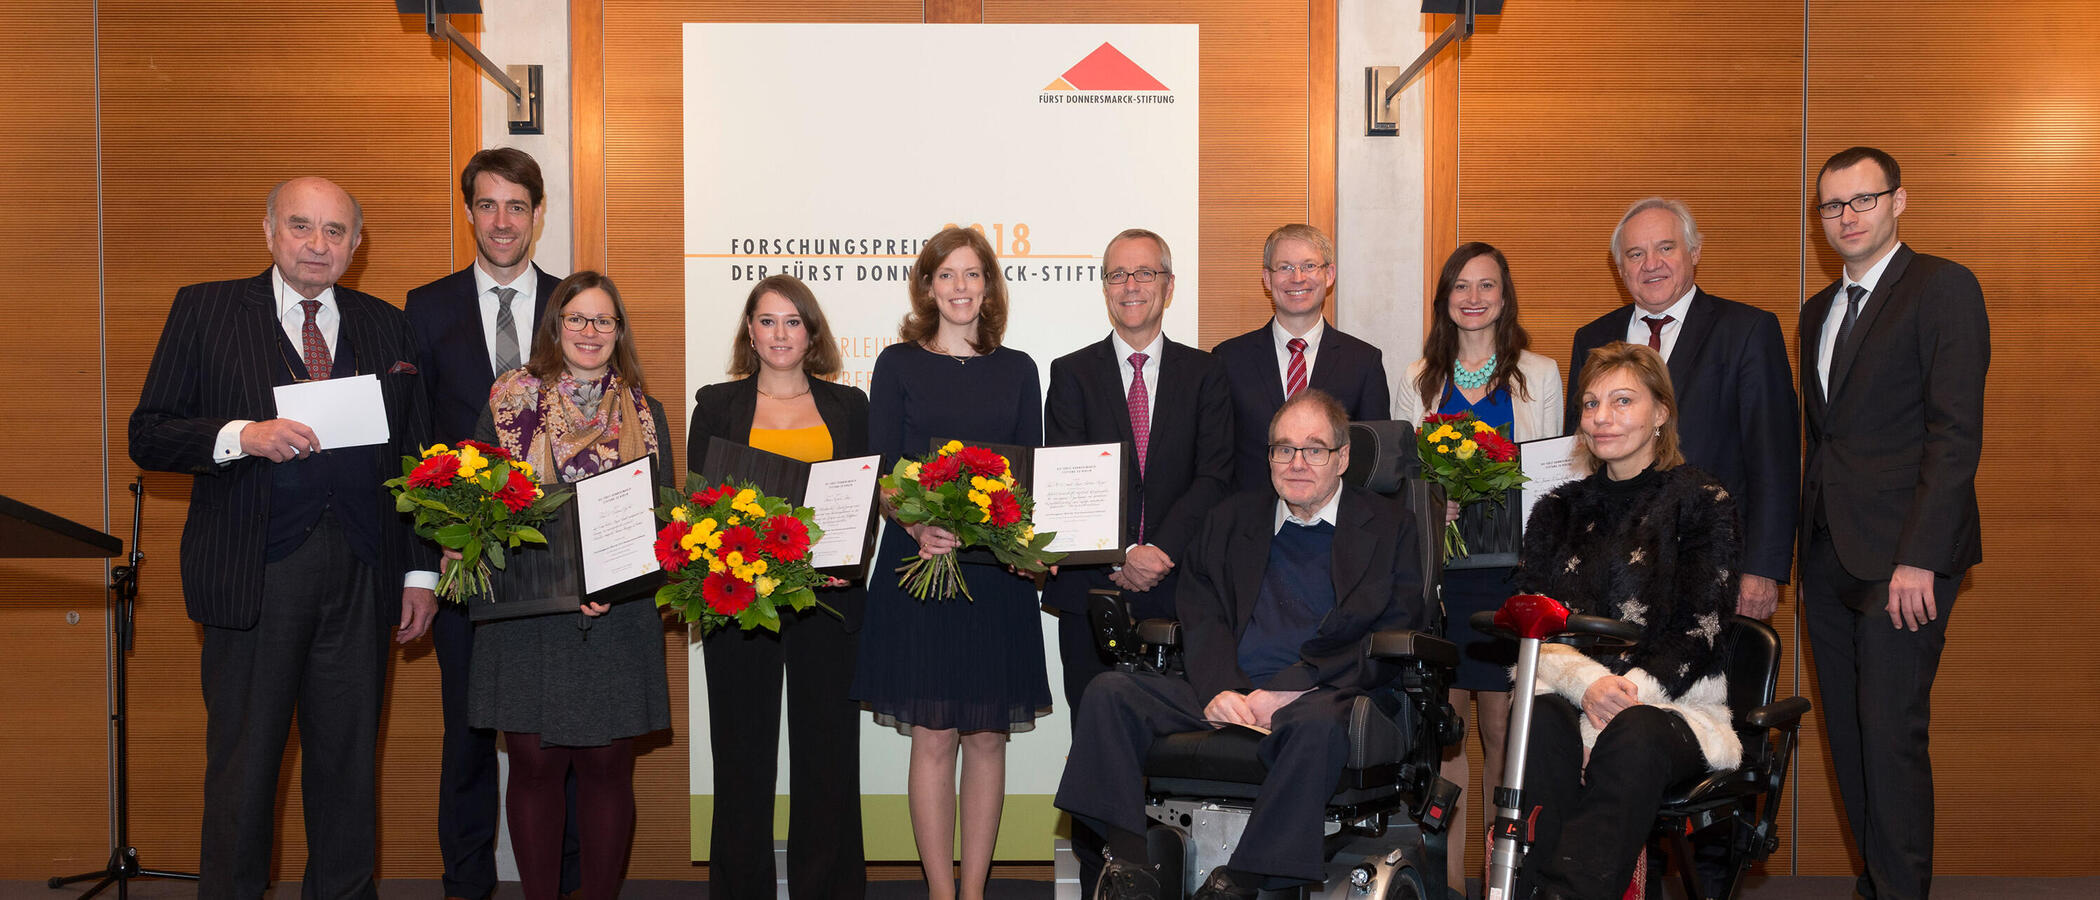 Gruppenfoto mit den Preisträgerinnen, der Jury und Co. beim Forschungspreis 2018.